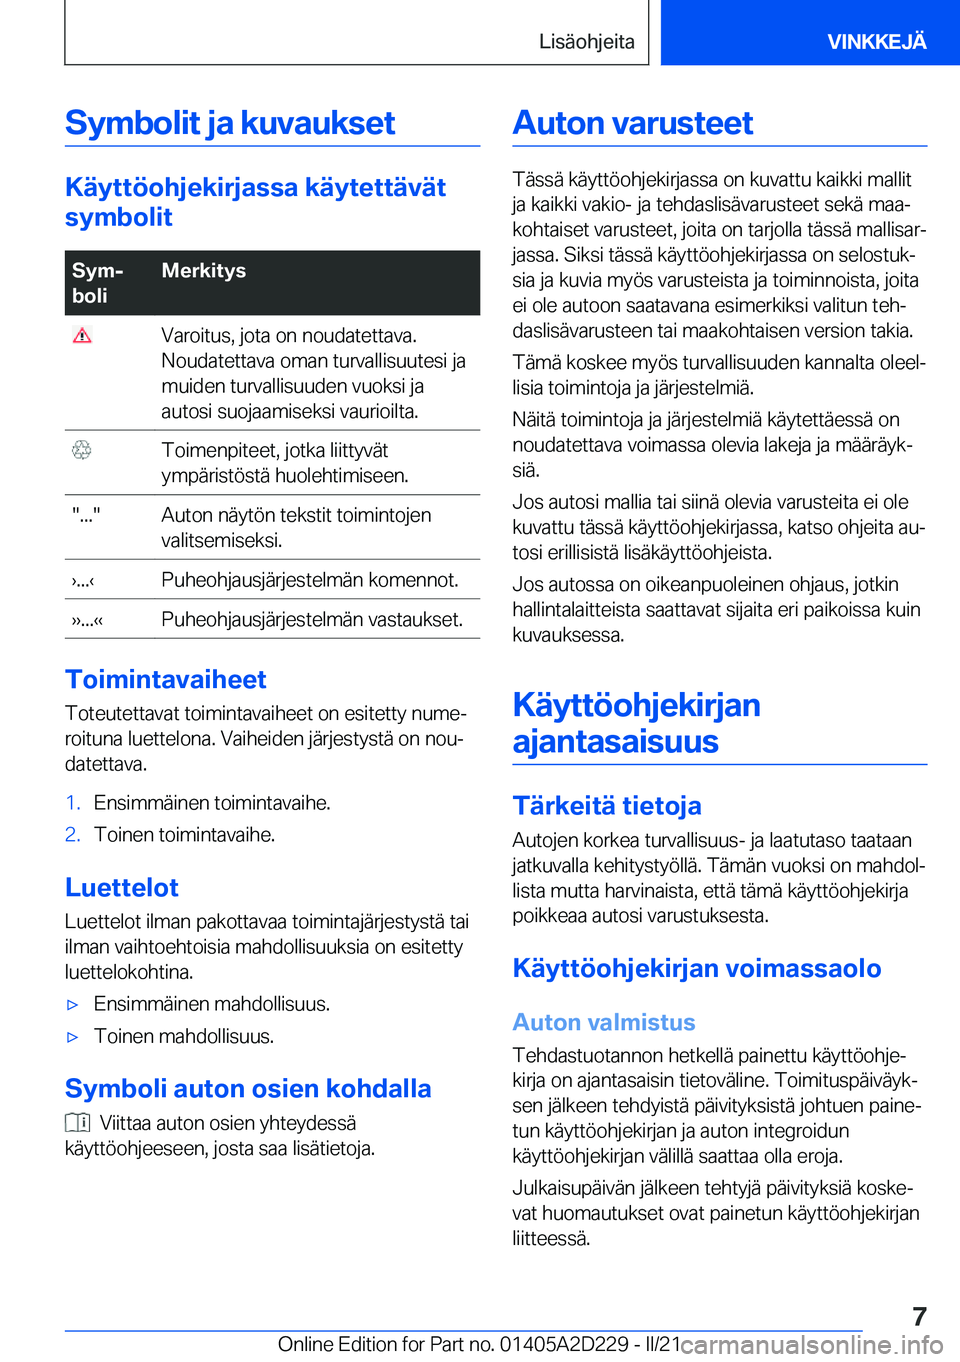 BMW X6 M 2021  Omistajan Käsikirja (in Finnish) �S�y�m�b�o�l�i�t��j�a��k�u�v�a�u�k�s�e�t
�K�